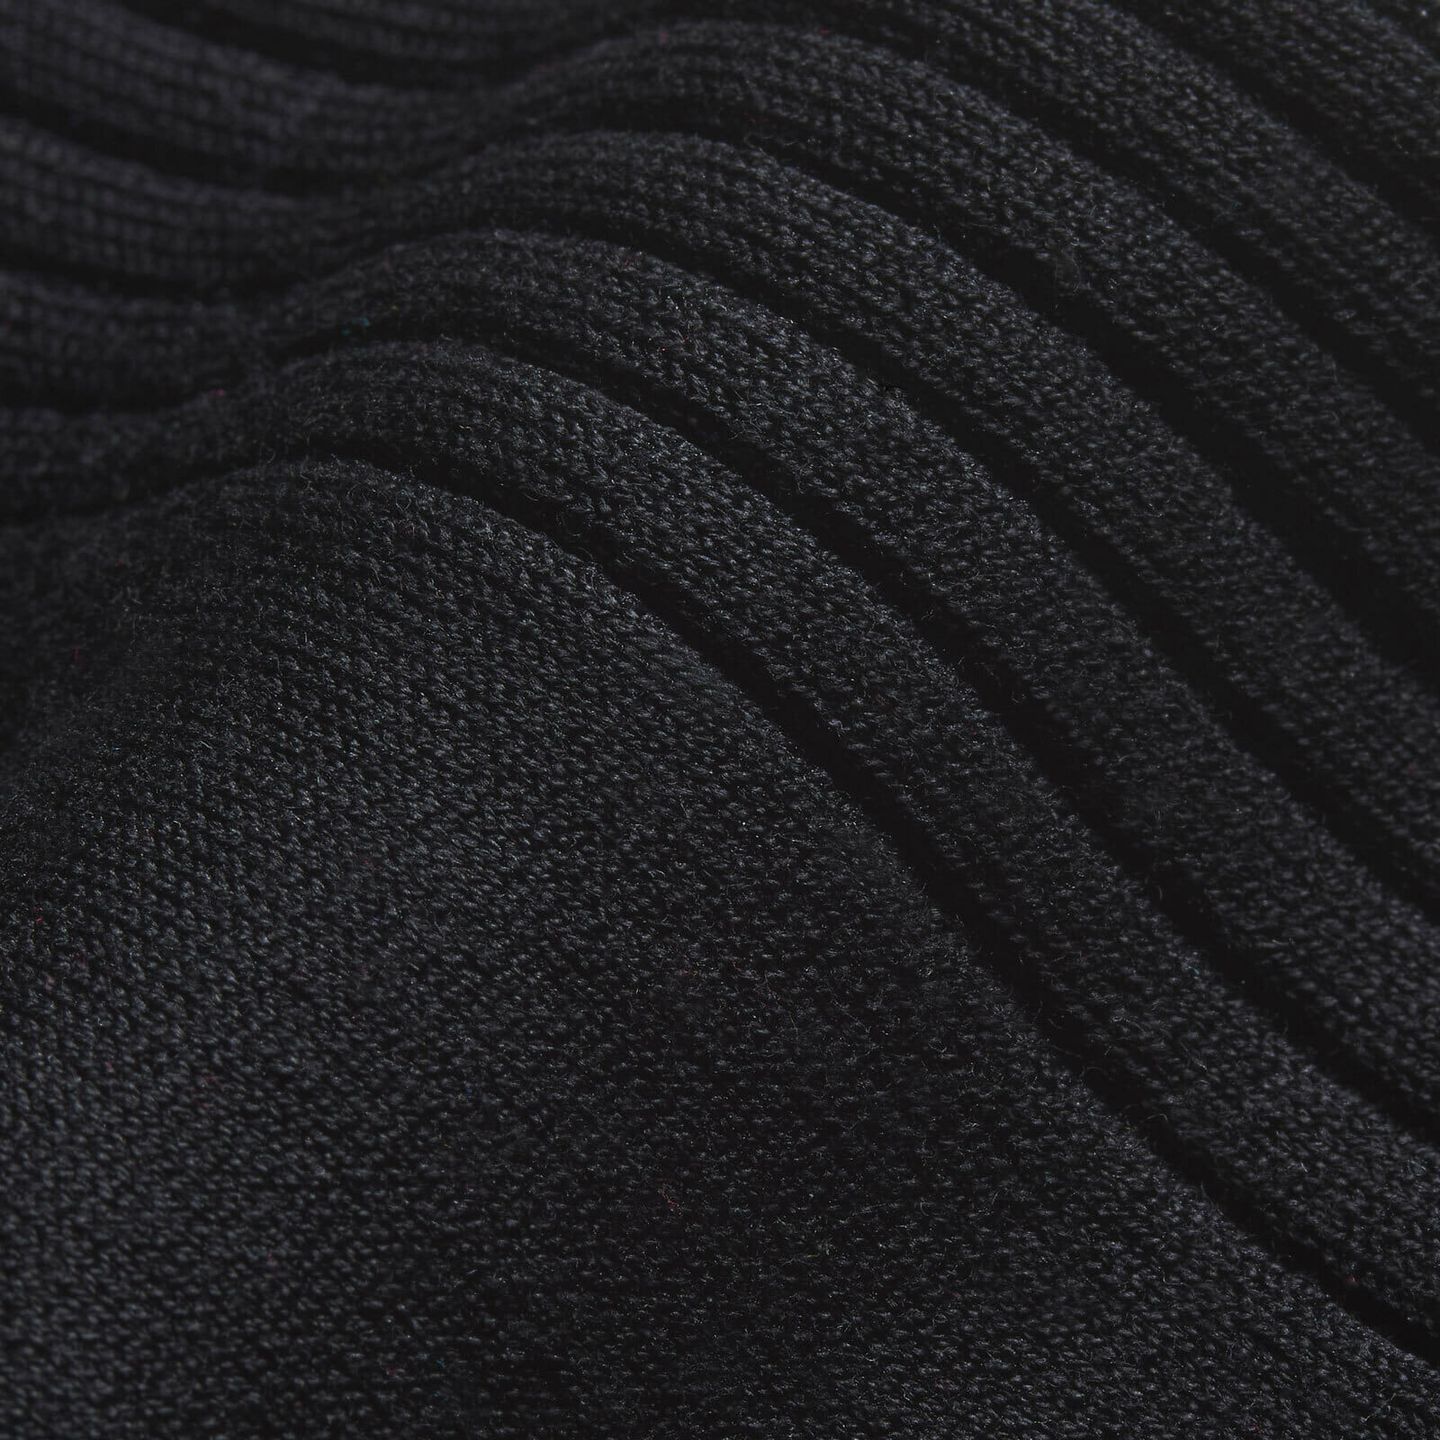 A close up of a black sock